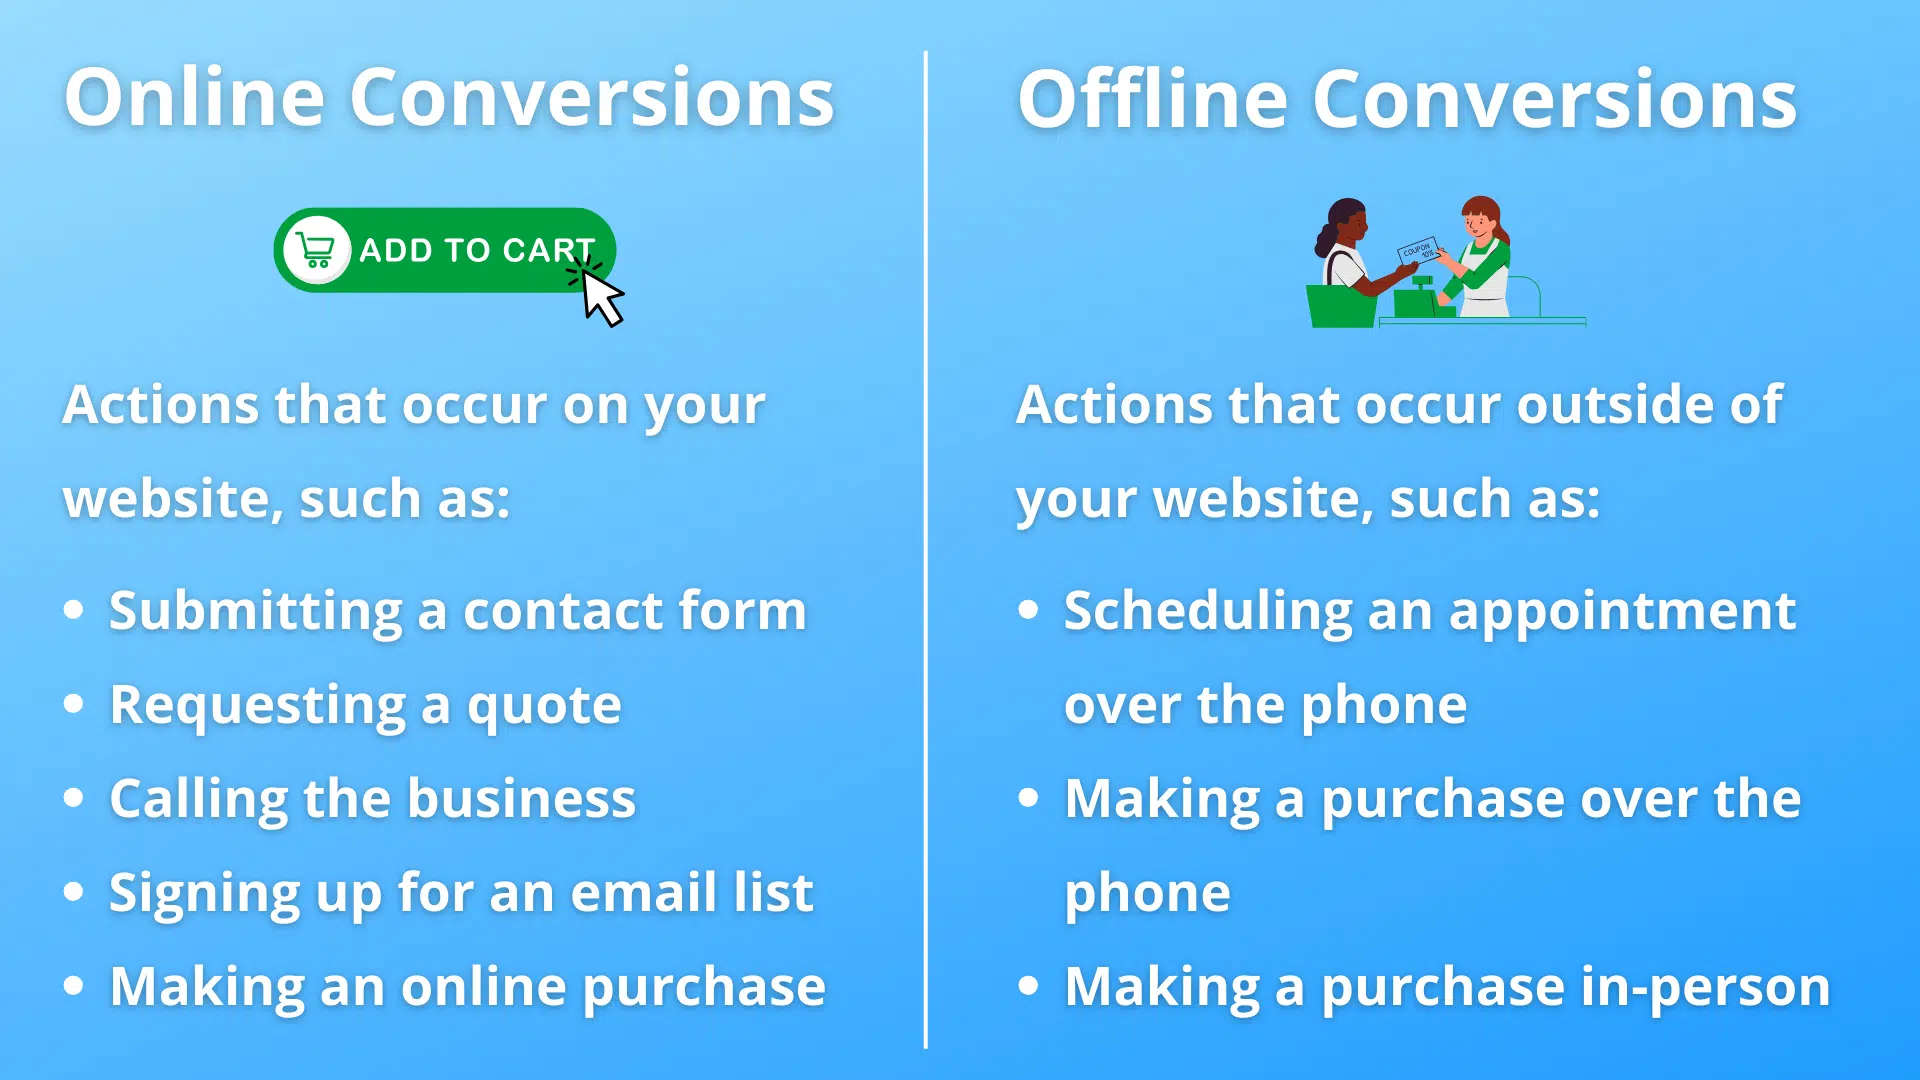 Online vs. Offline Conversions